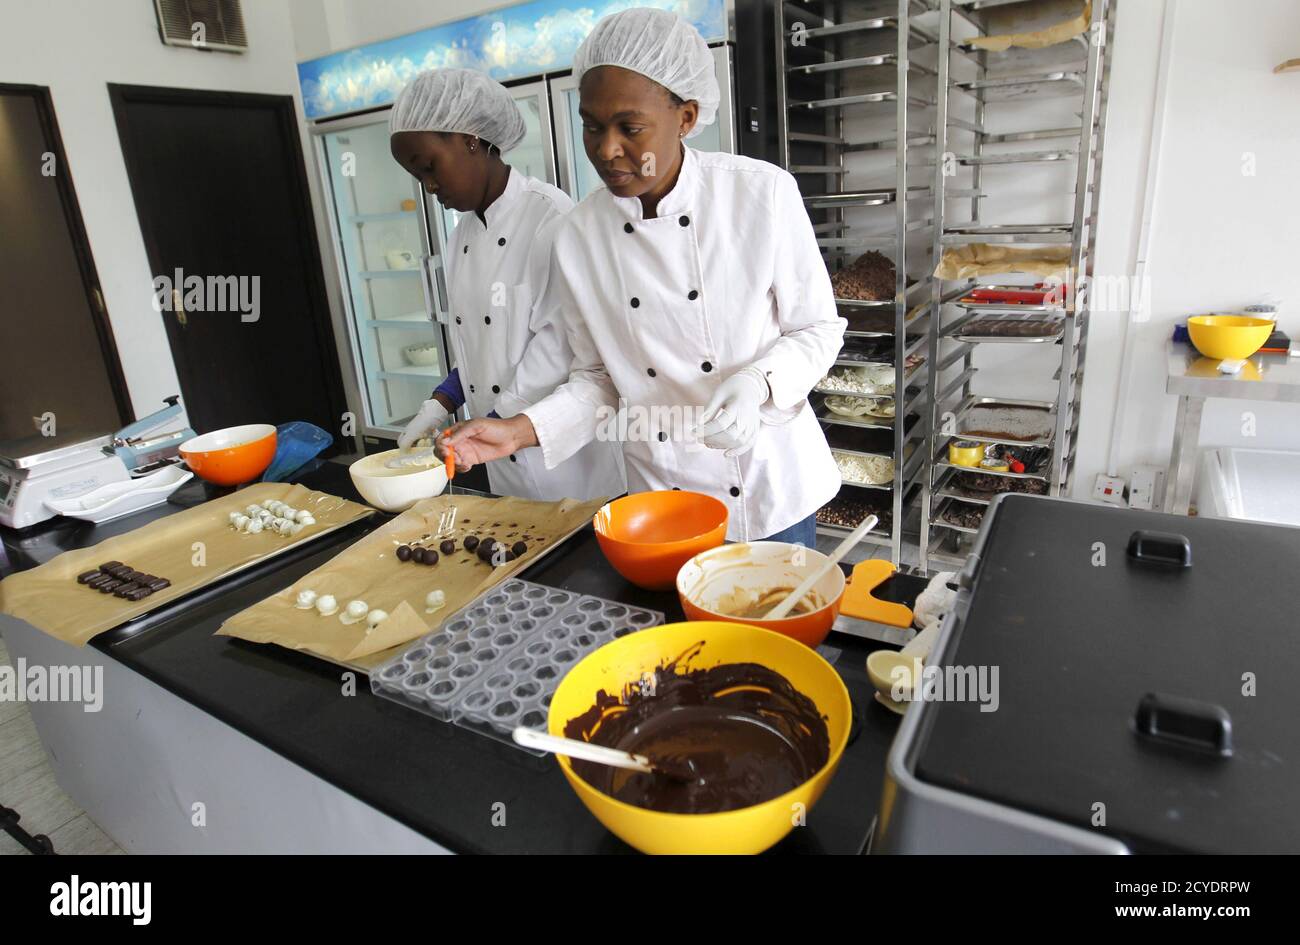 Operai artigiani preparano stampi di cioccolato all'interno della fabbrica di cioccolato assoluto nella capitale del Kenya Nairobi 20 marzo 2015. Il consumo di cioccolato nell'Africa subsahariana è in aumento. Secondo la società di ricerche di mercato Nielsen, le vendite in Sud Africa, il mercato più grande del continente, sono salite a 6.4 miliardi di rand (531 milioni di dollari) nel 2014 rispetto ai 5.8 miliardi di rand del 2013. In Kenya, Naheed Ahmed ha iniziato Absolute Chocolate a novembre dopo aver ottenuto il suo primo assaggio di cioccolato alla scuola culinaria in Sud Africa. Ora produce 100 chilogrammi al mese, vendendo i suoi tartufi infusi di peperoncino da sotto il vetro Foto Stock